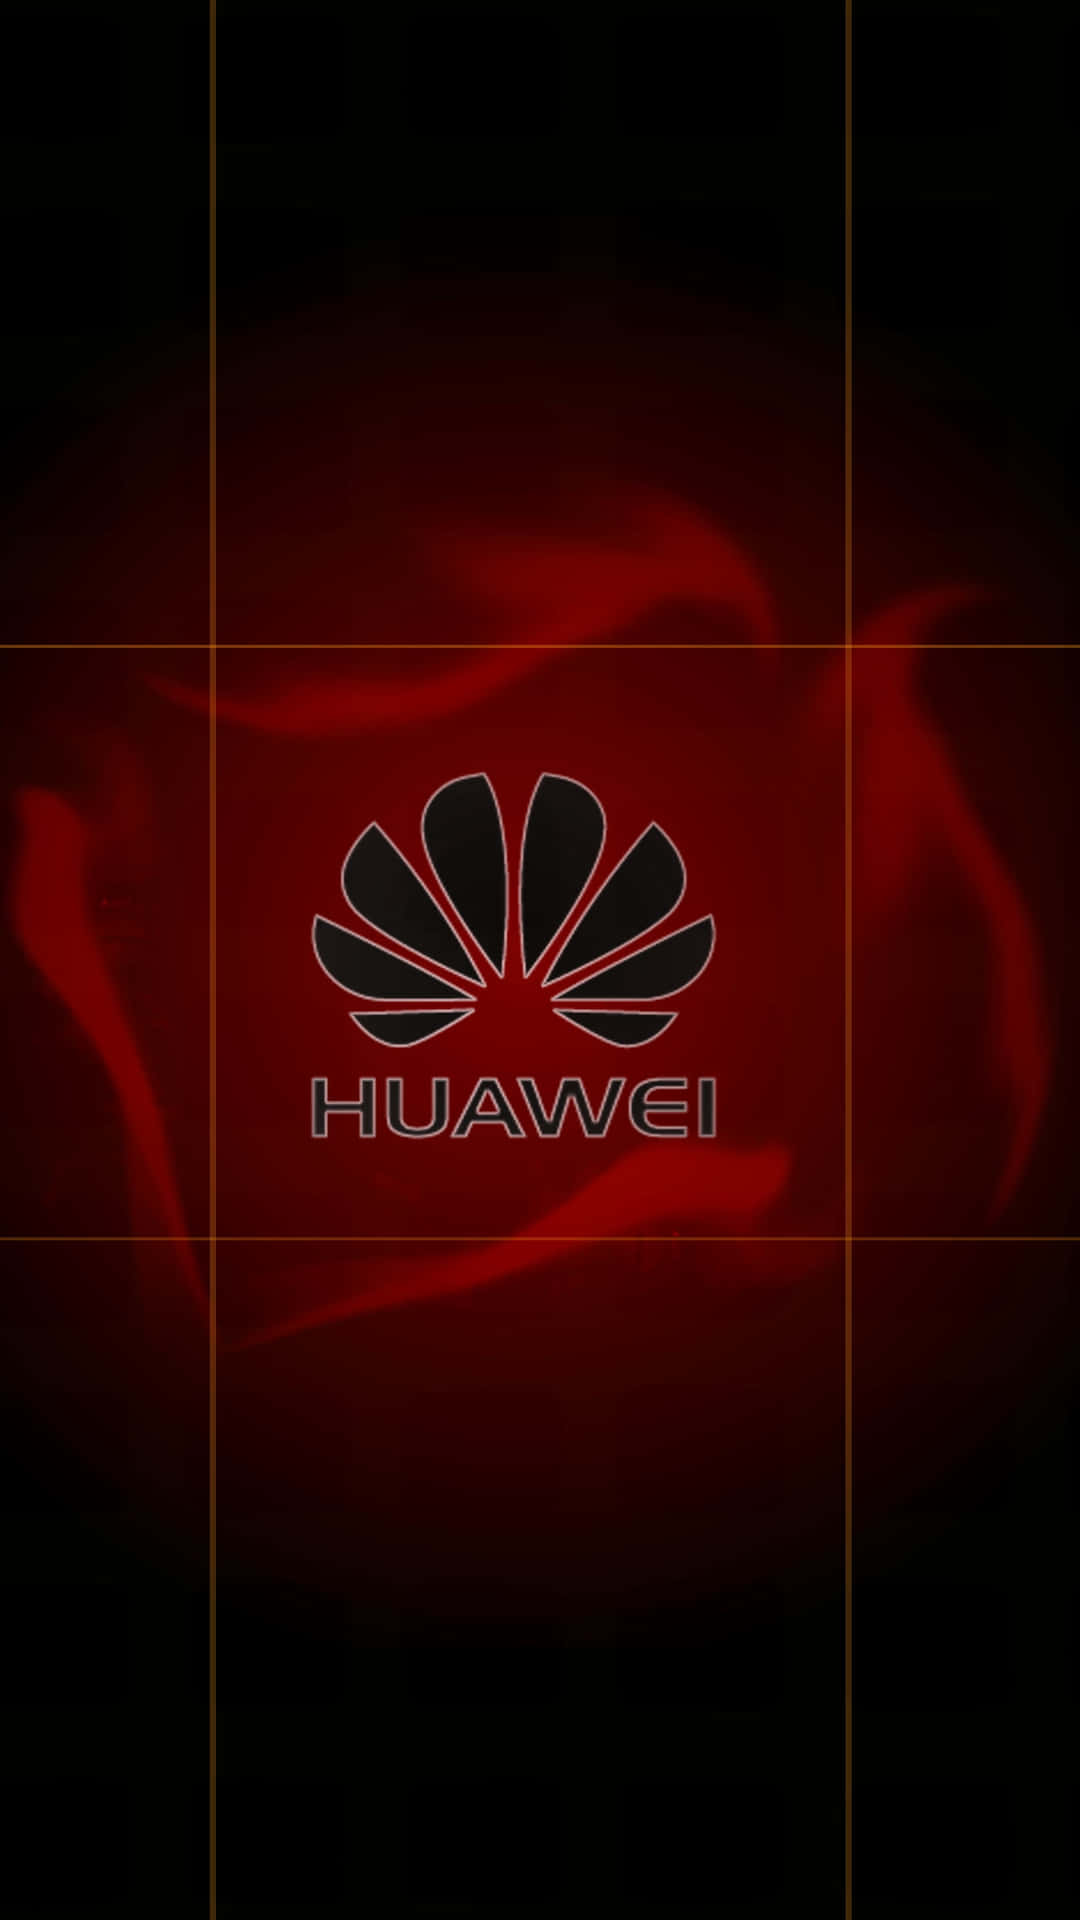 Ellogo De Huawei Entre Las Nubes